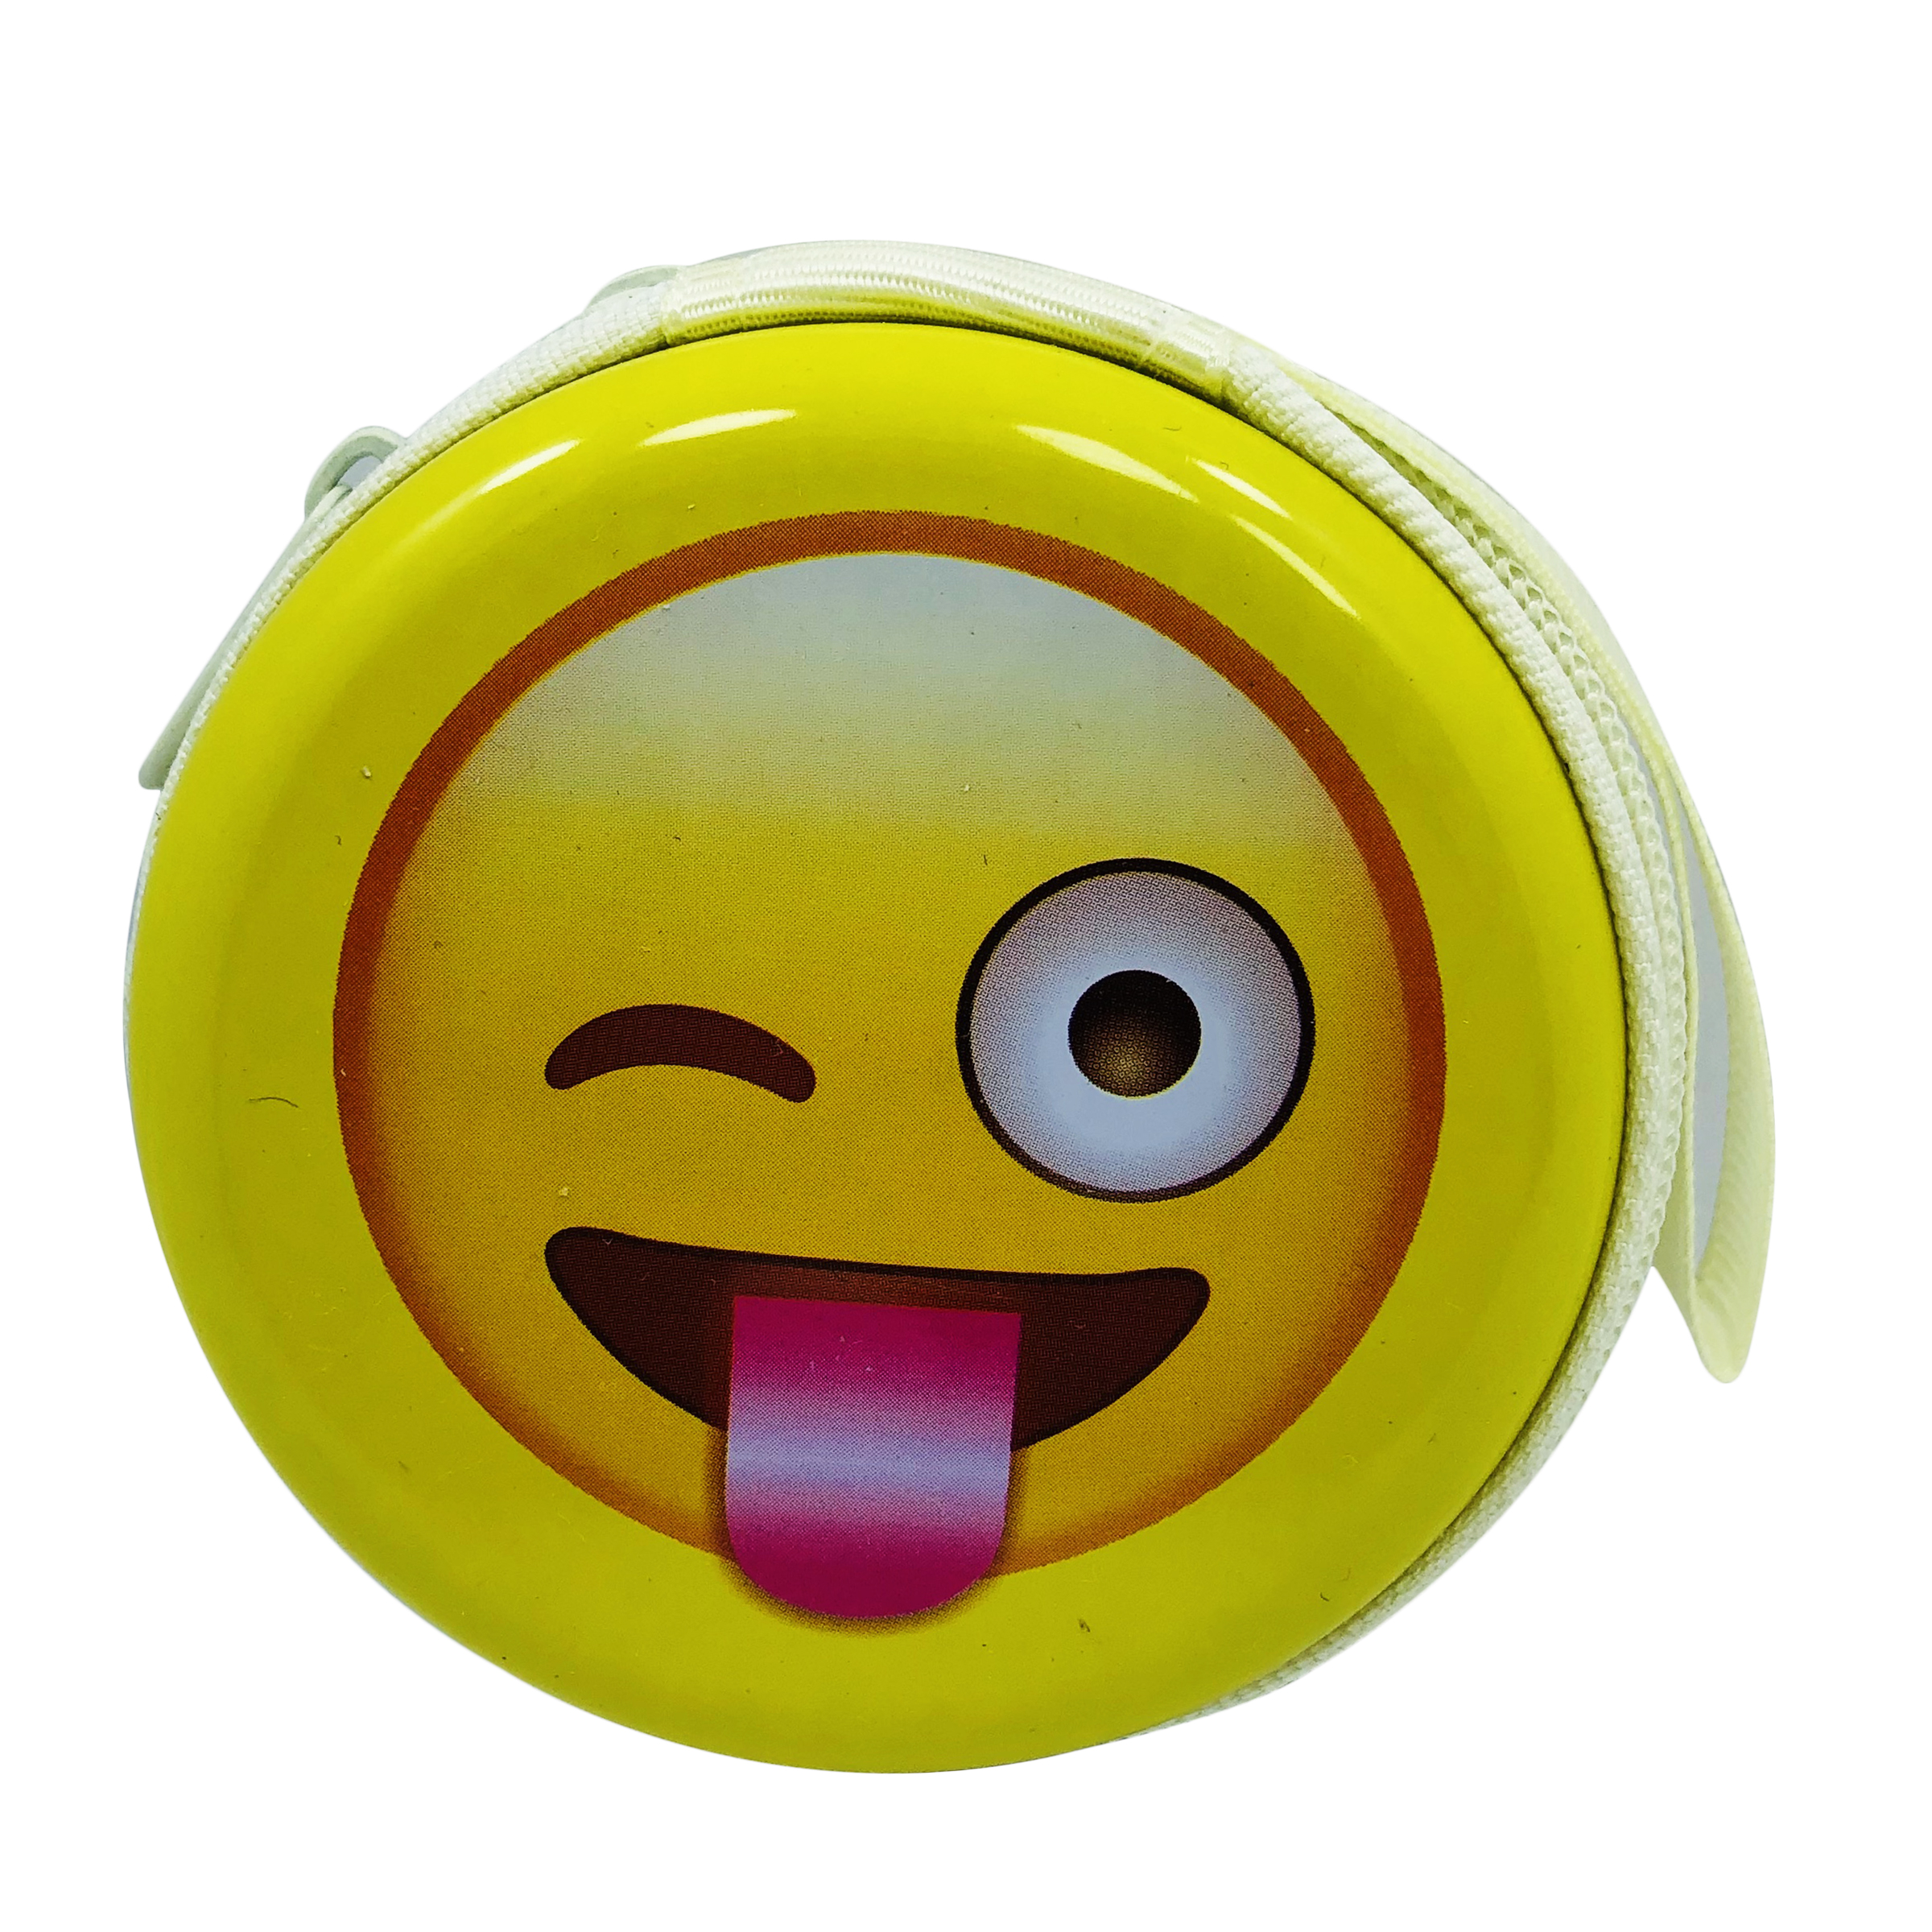 کیف هندزفری مدل emoji طرح چشمک